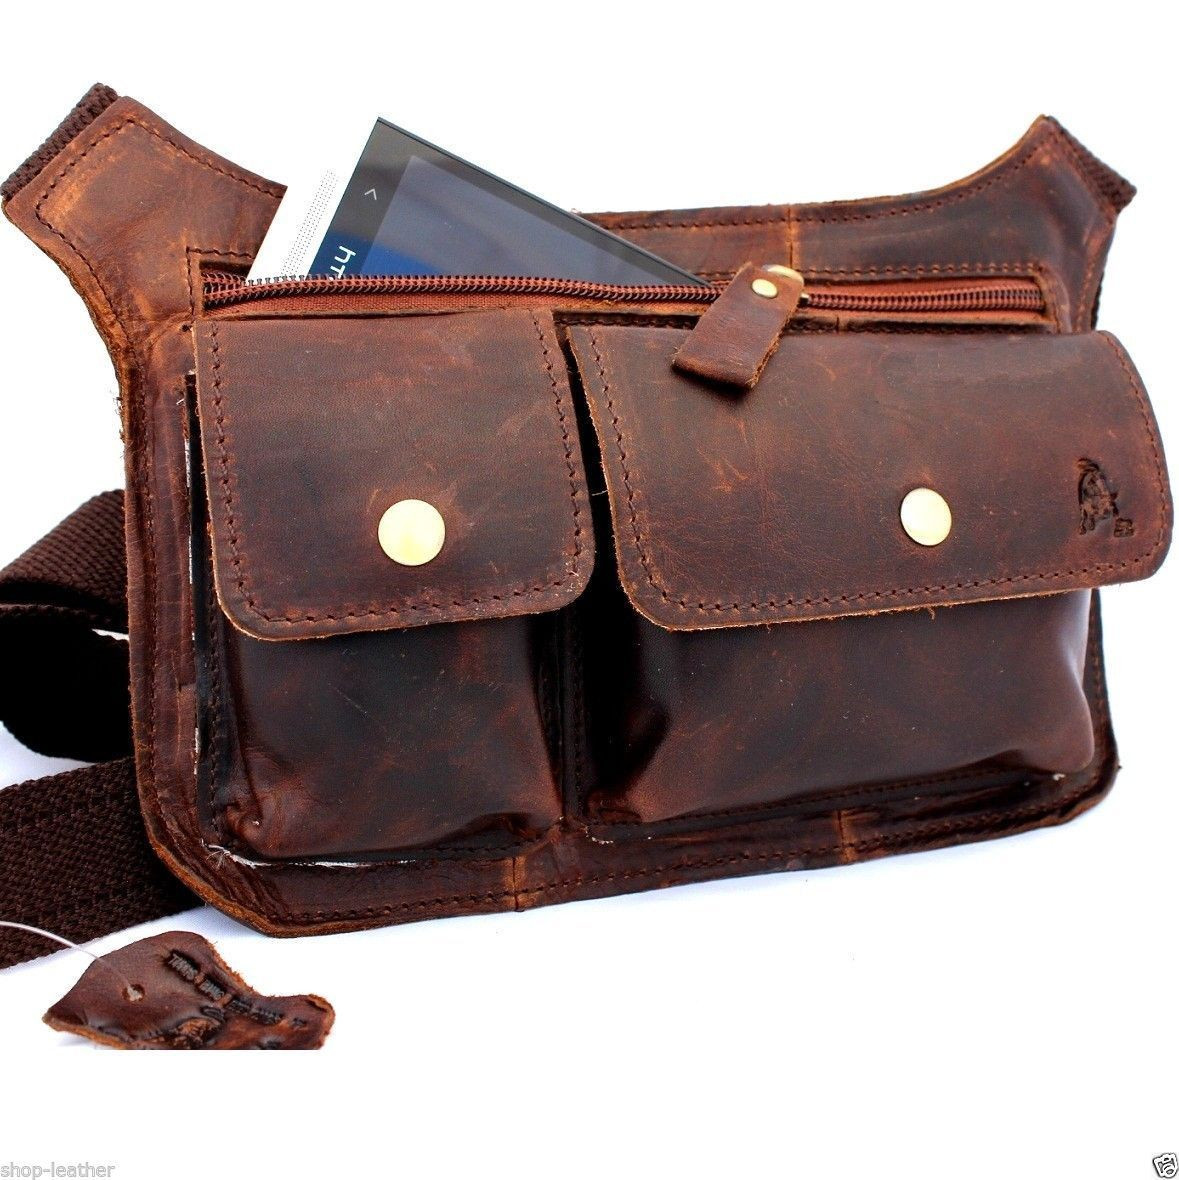 waist pouch purse